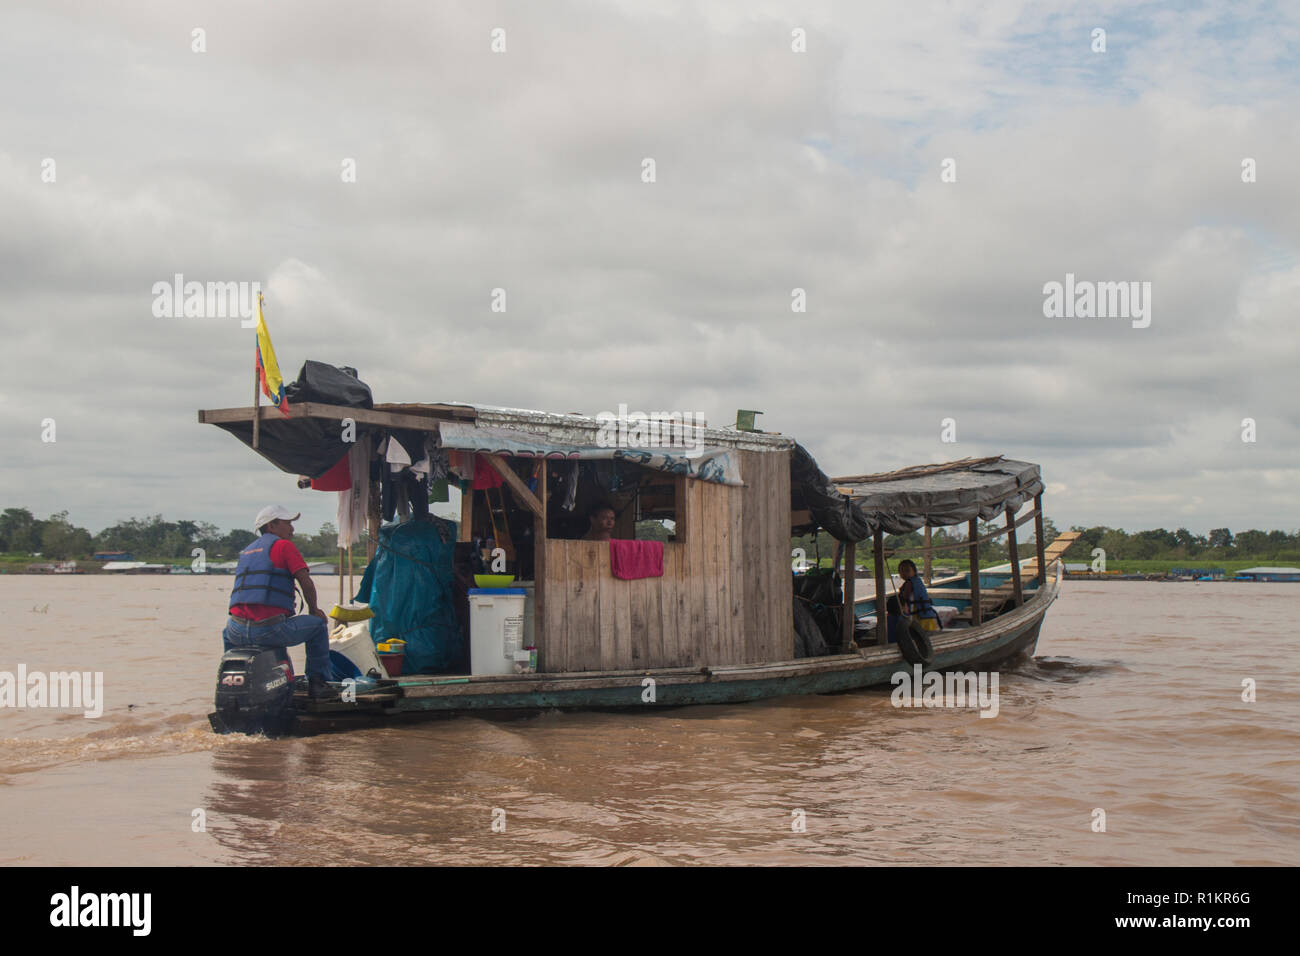 Leticia, Amazon river, Colombia - 10/12/2015, house boat cruising down the Amazon river near the town of Leticia Stock Photo